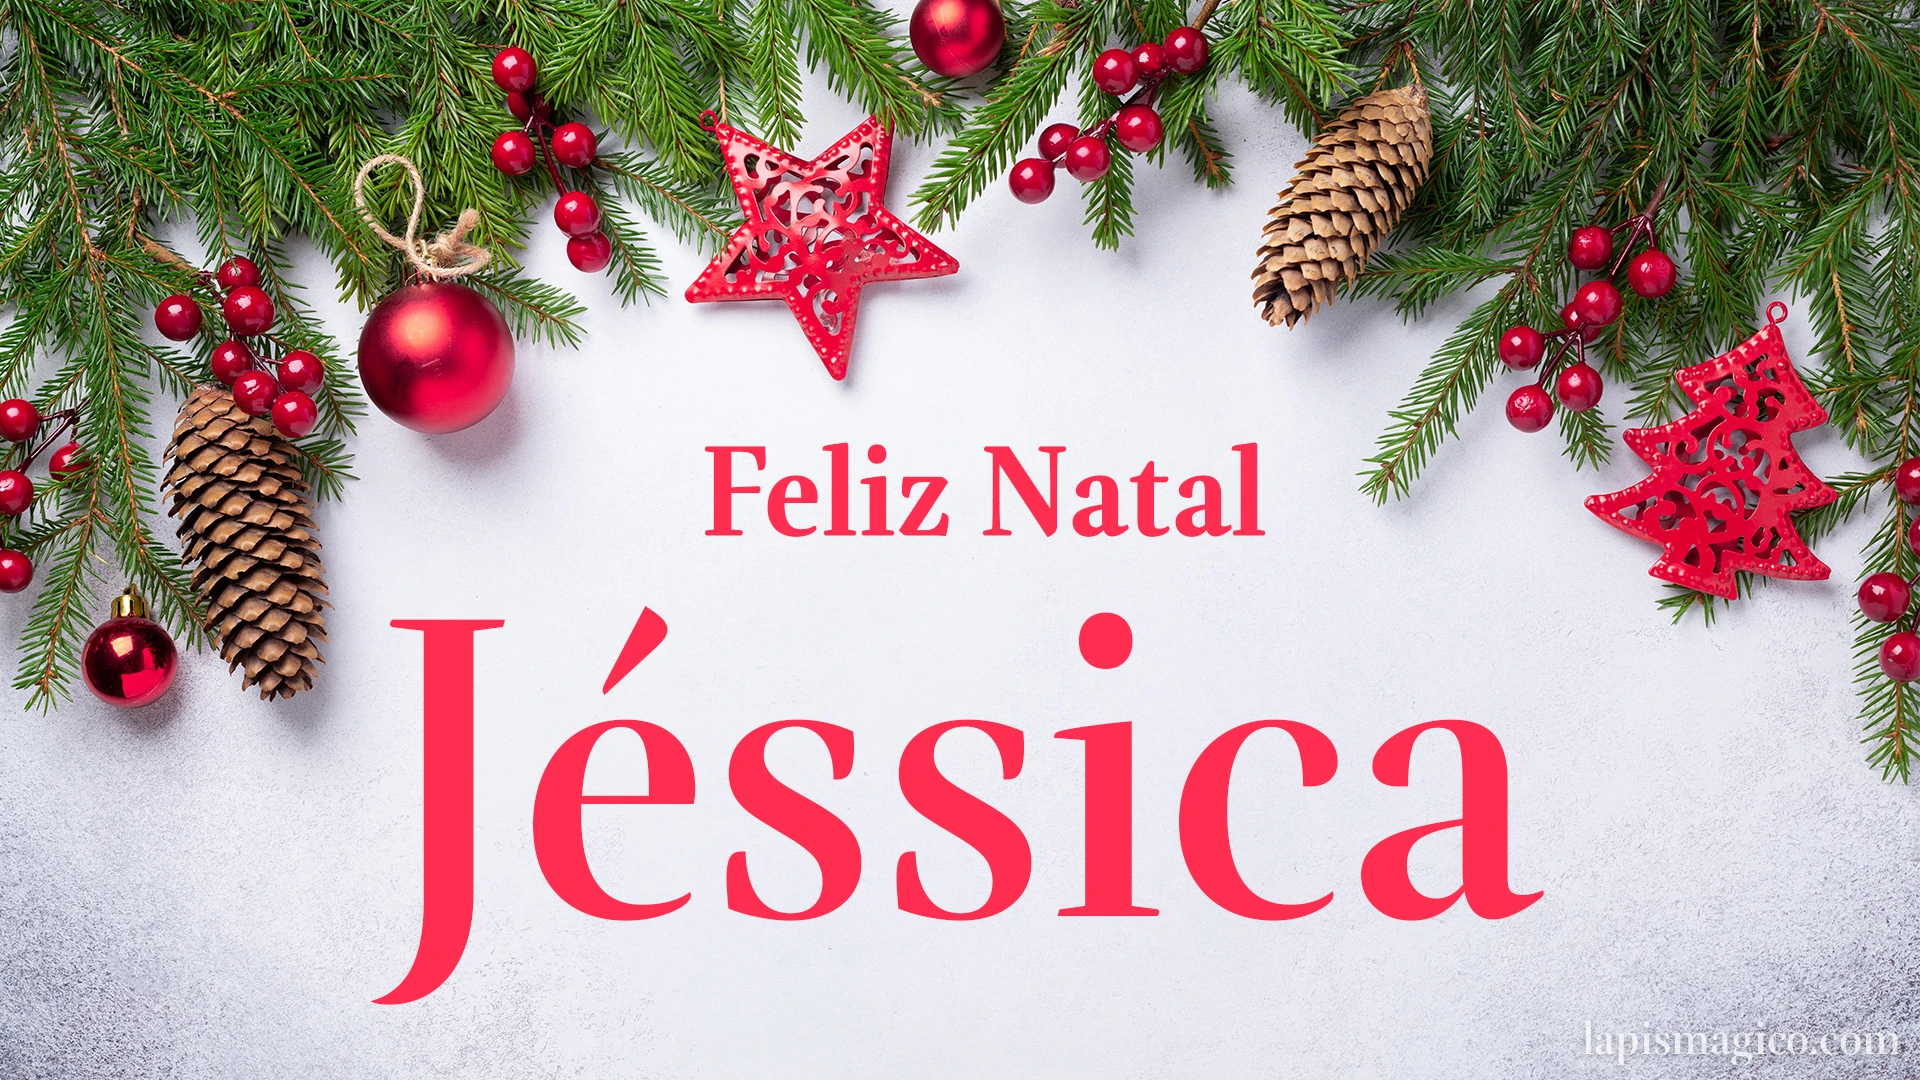 Oh Jéssica, cinco postais de Feliz Natal Postal com o teu nome